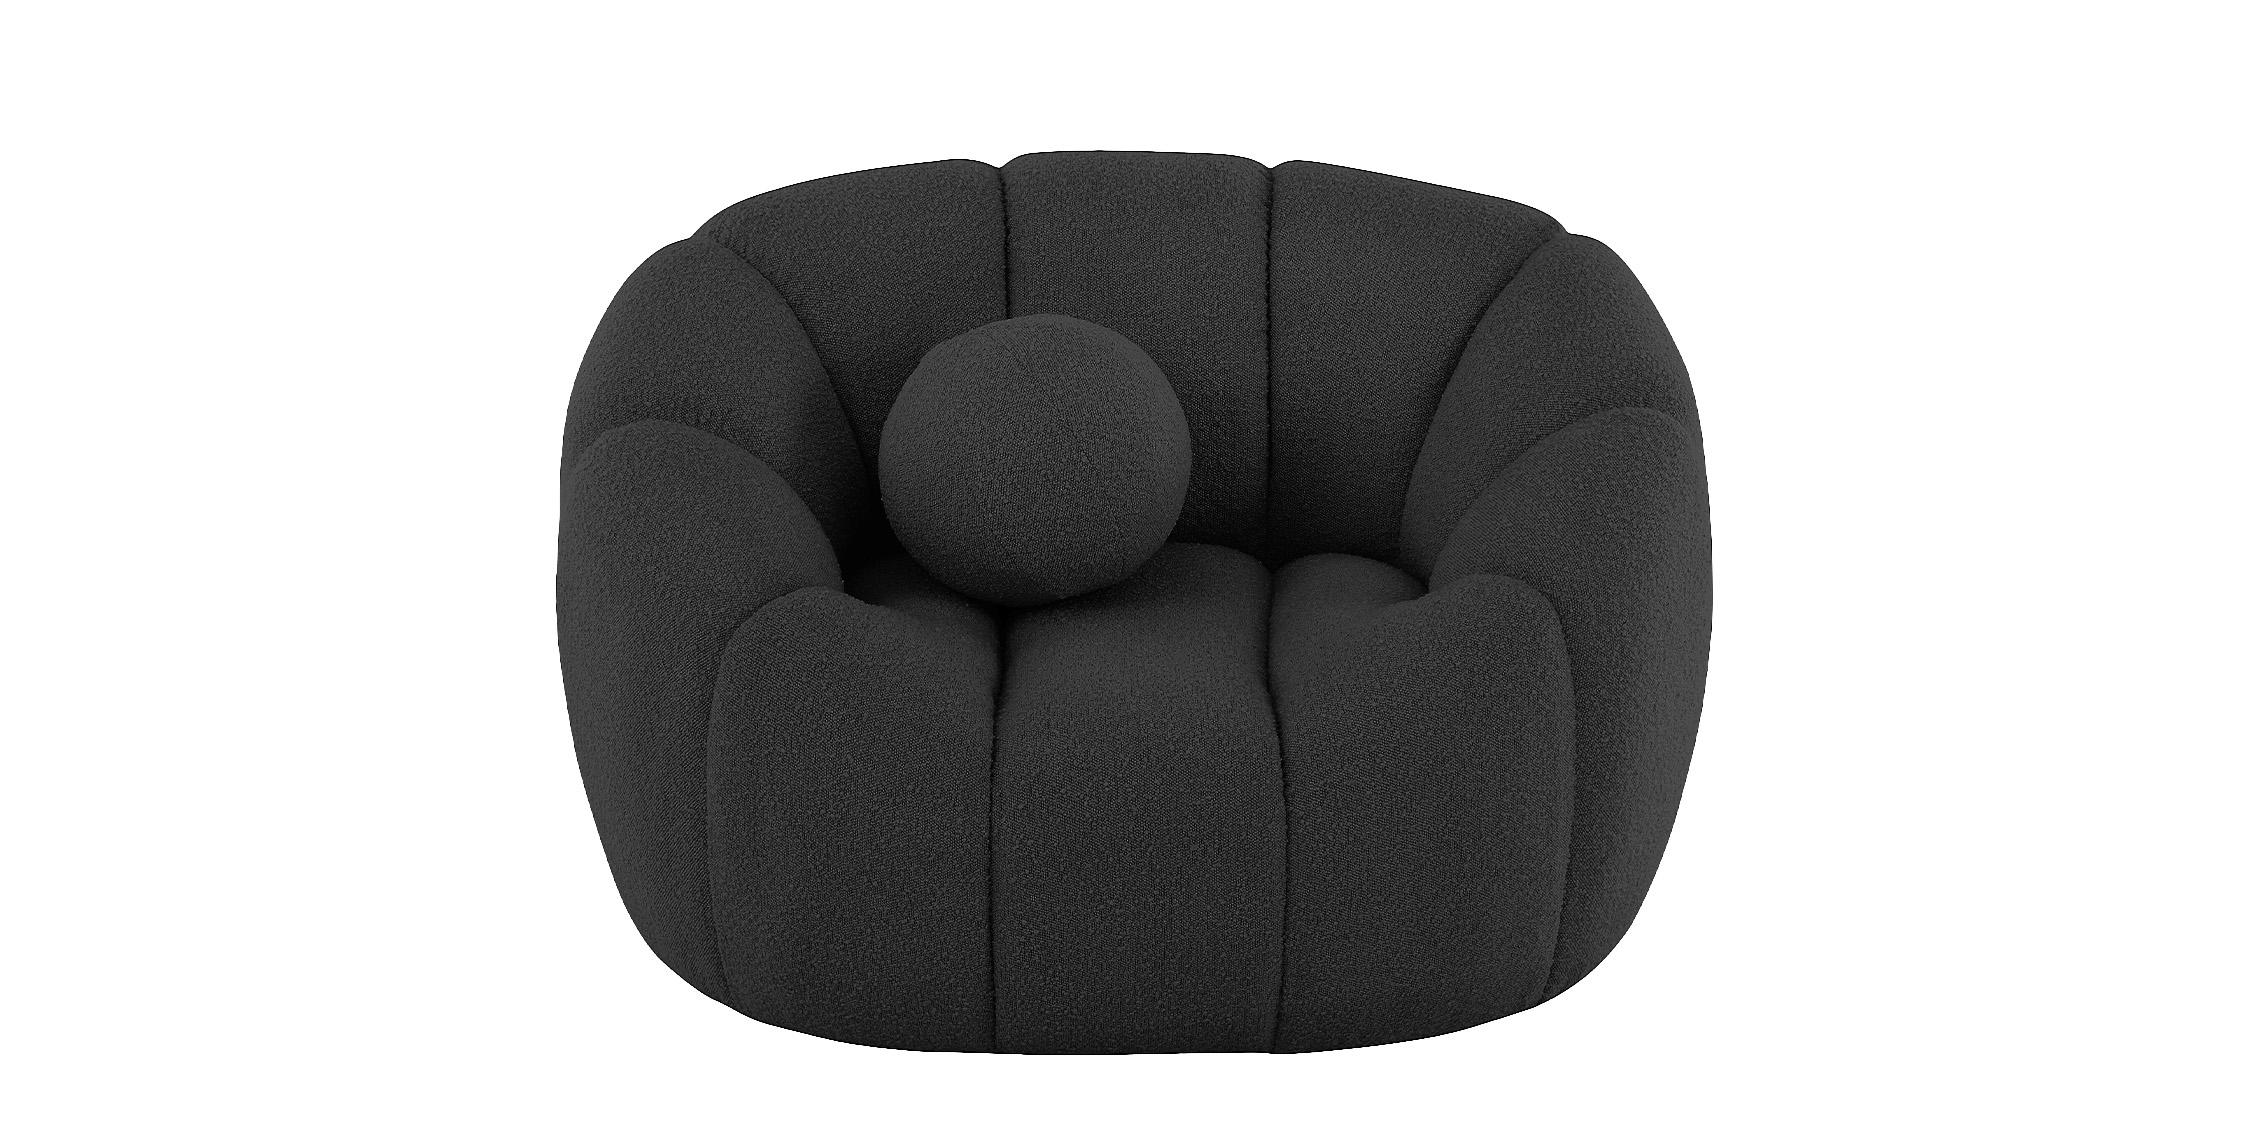 

    
Glam Black Boucle Channel Tufted Sofa Set 3 ELIJAH 644Black-S Meridian Modern
